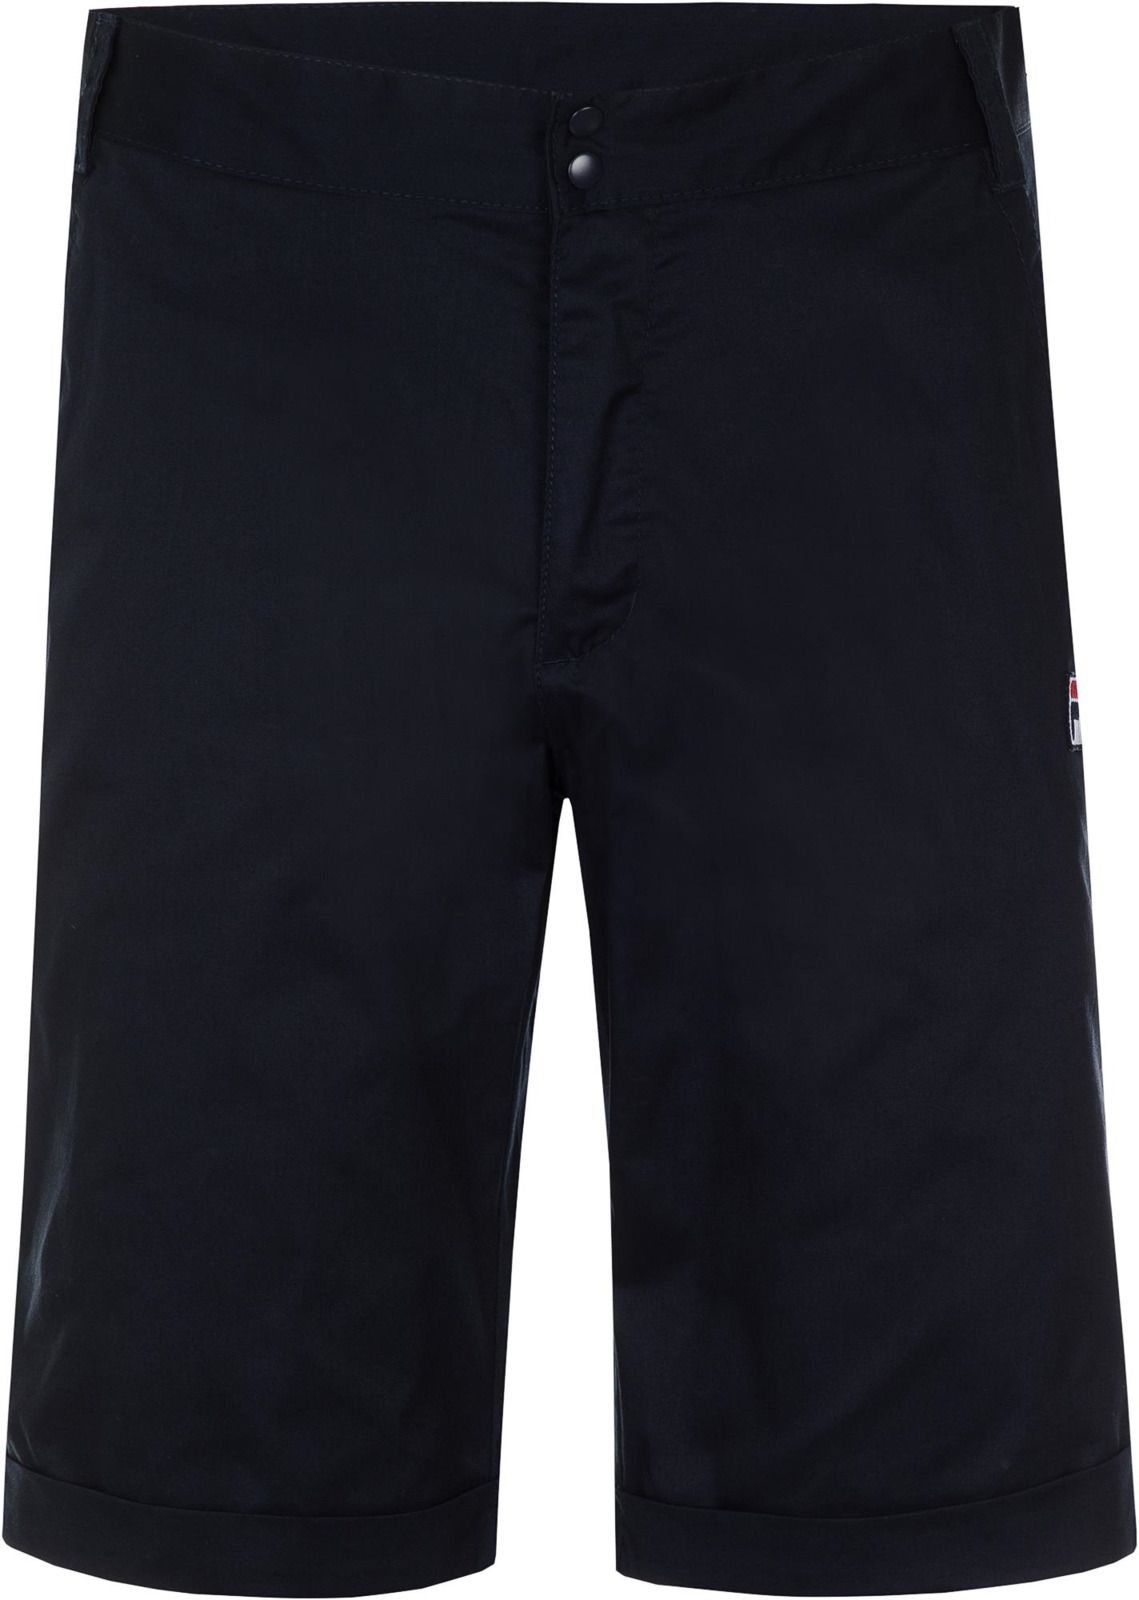   Fila Men's Shorts, : -. 100086-Z4.  L (50)